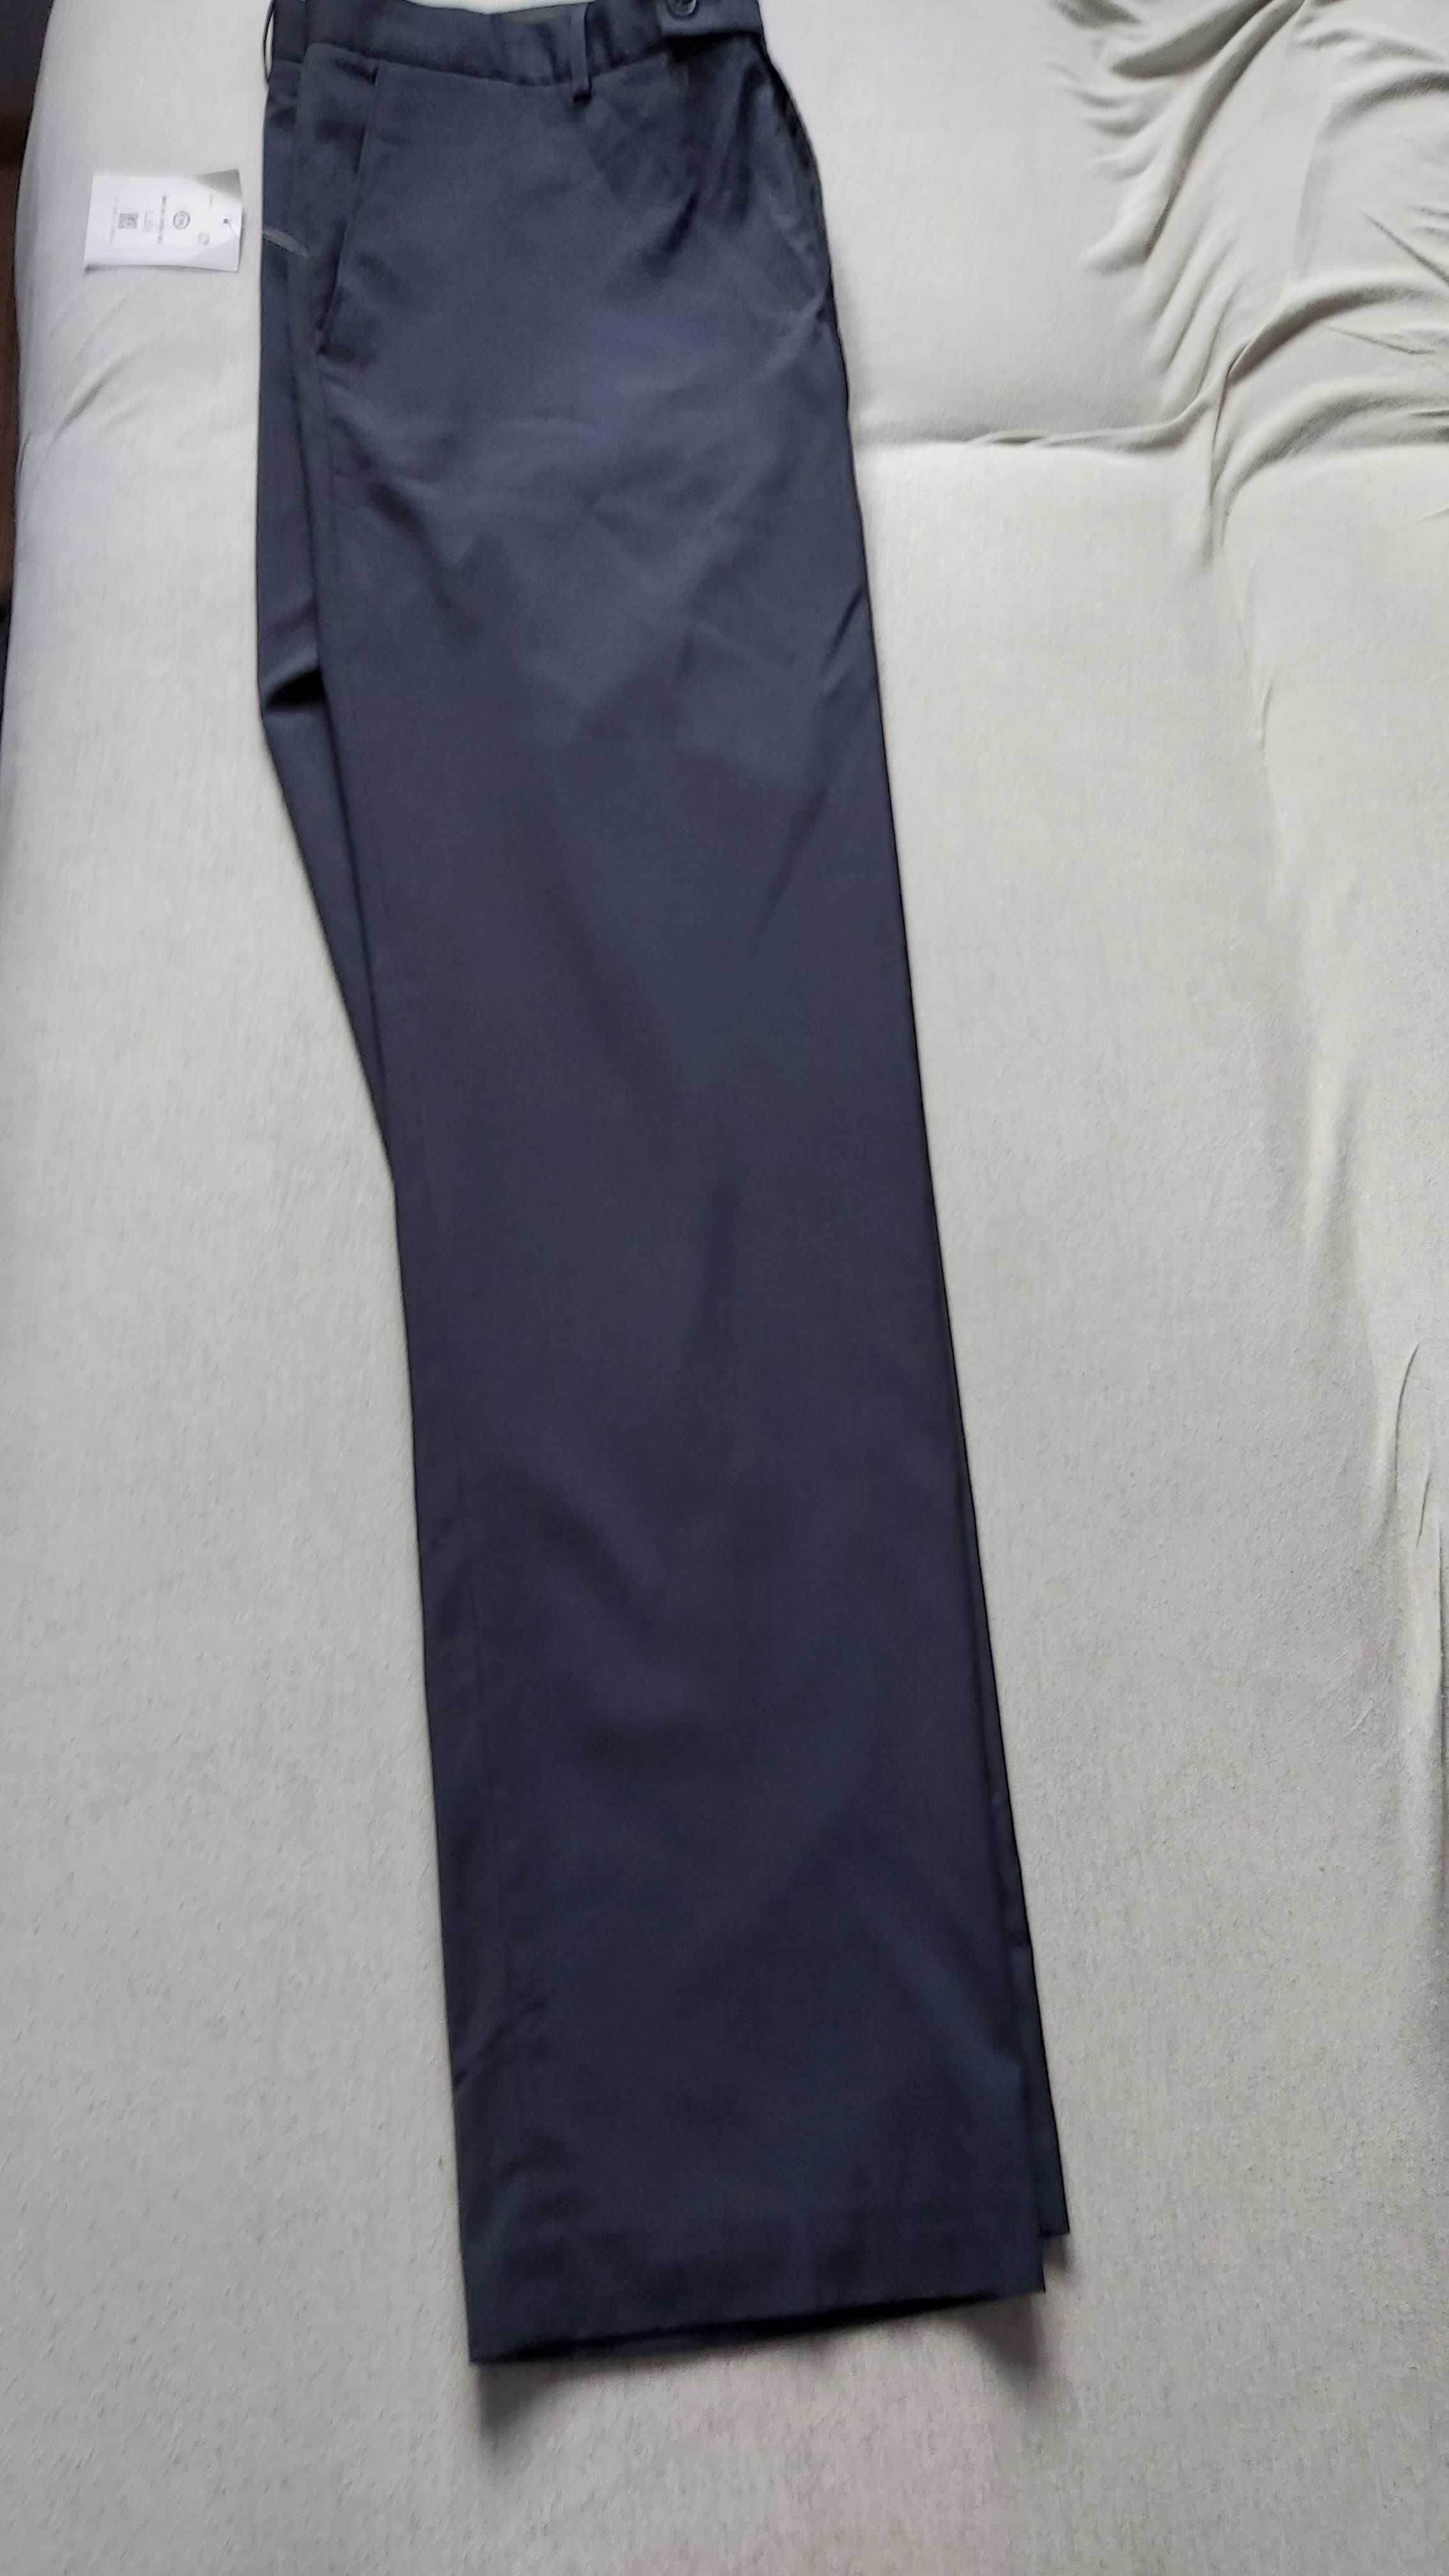 Nowe spodnie garniturowe męskie